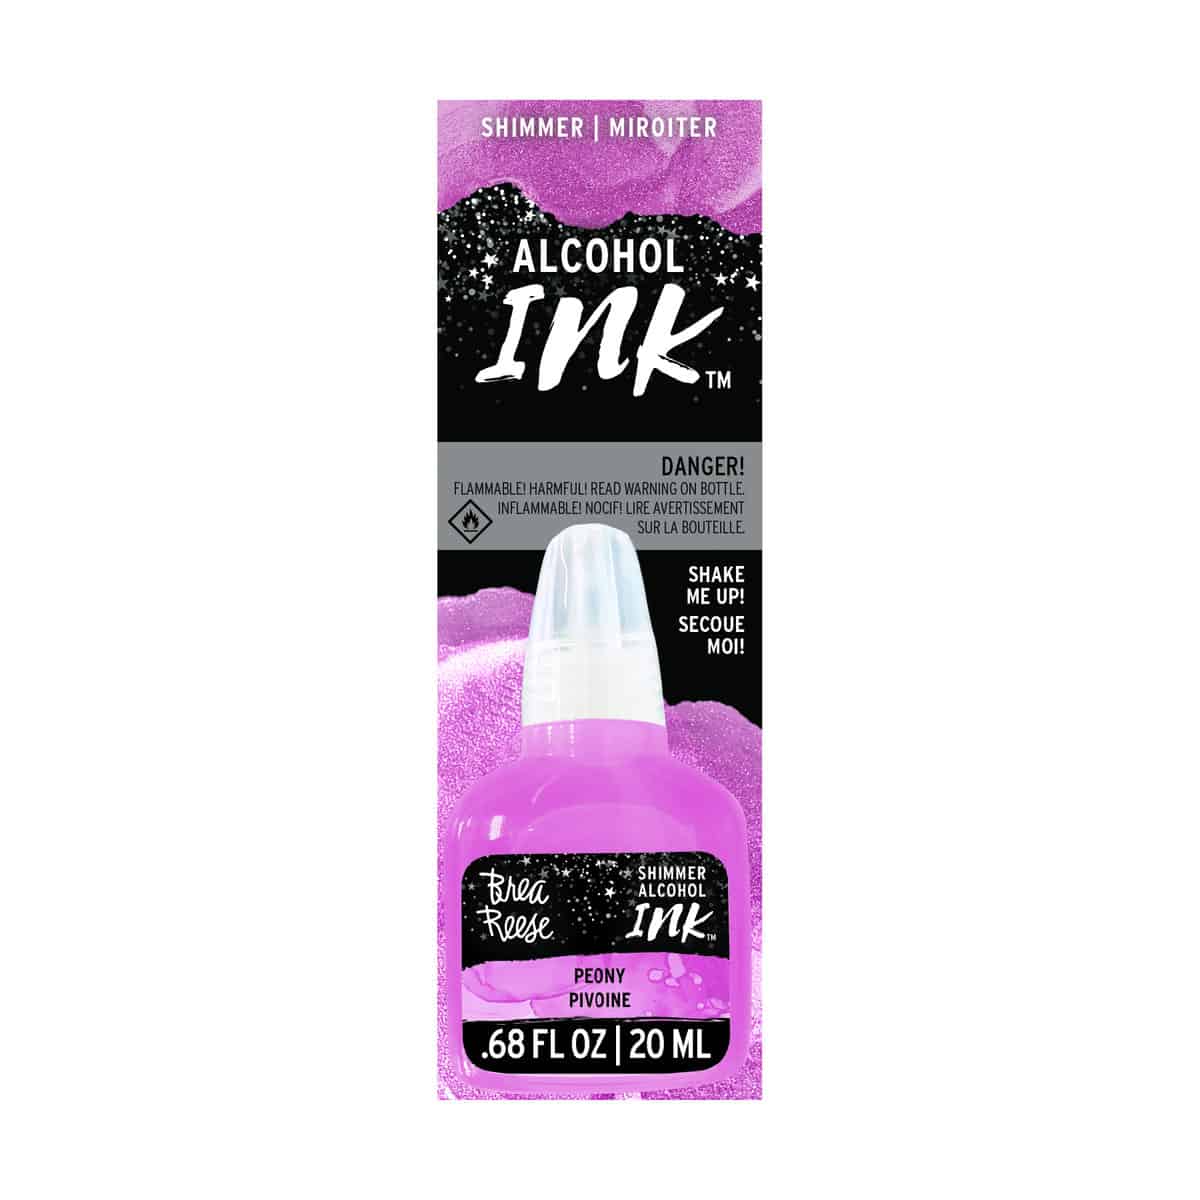 Pink shimmer alcohol ink